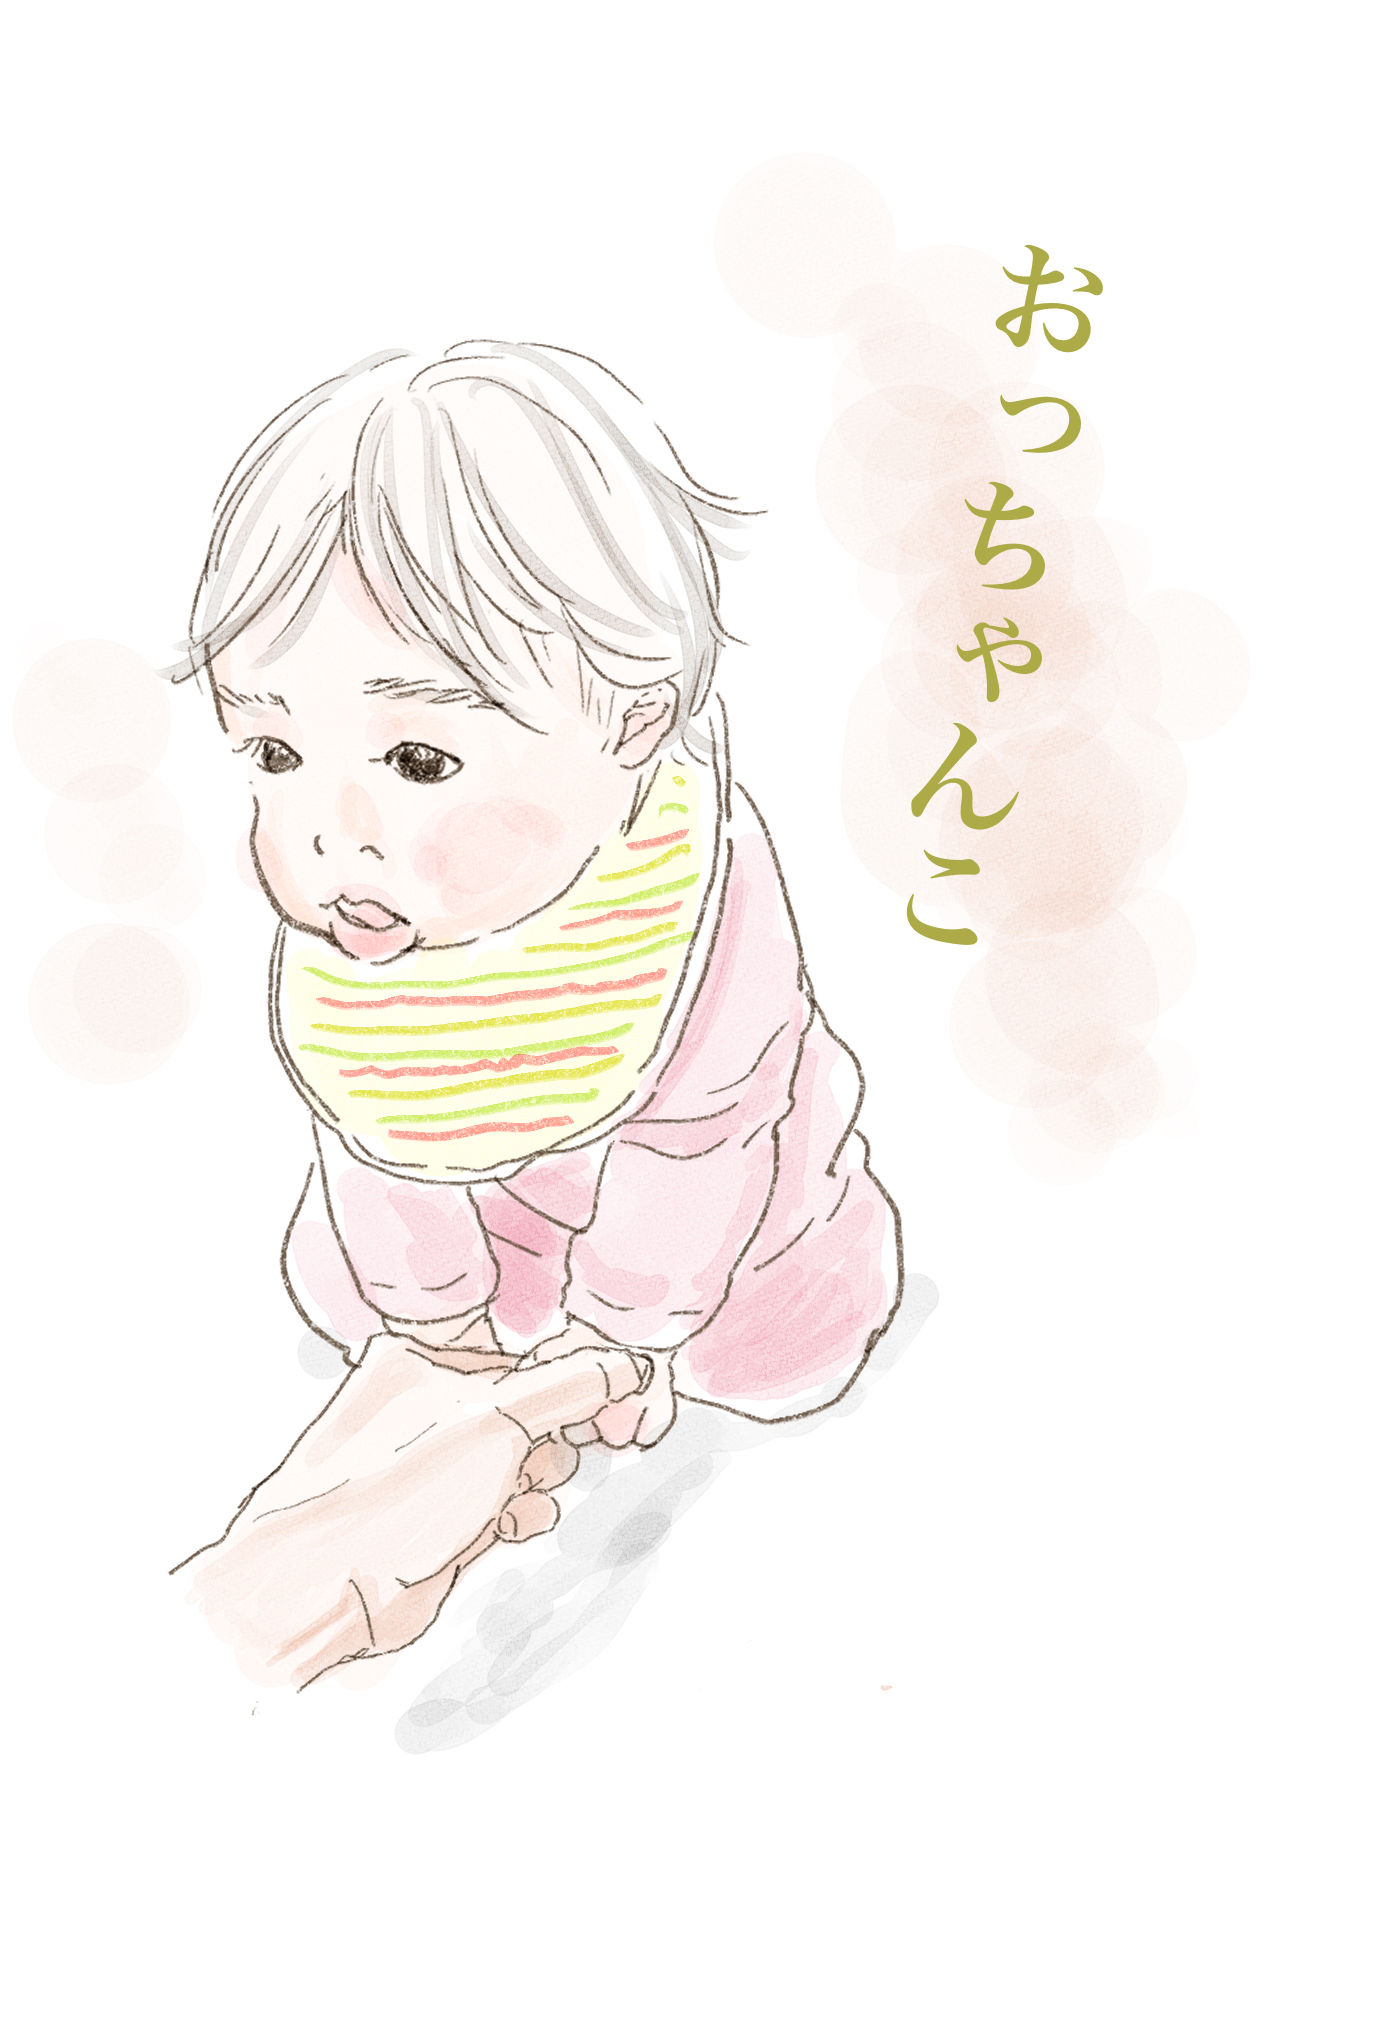 エザキ おはようございます 寒い 赤ちゃんイラスト すやすや 過去絵はツリーにしてます イラスト 赤ちゃん 育児絵日記 T Co Fdsggwnobg Twitter